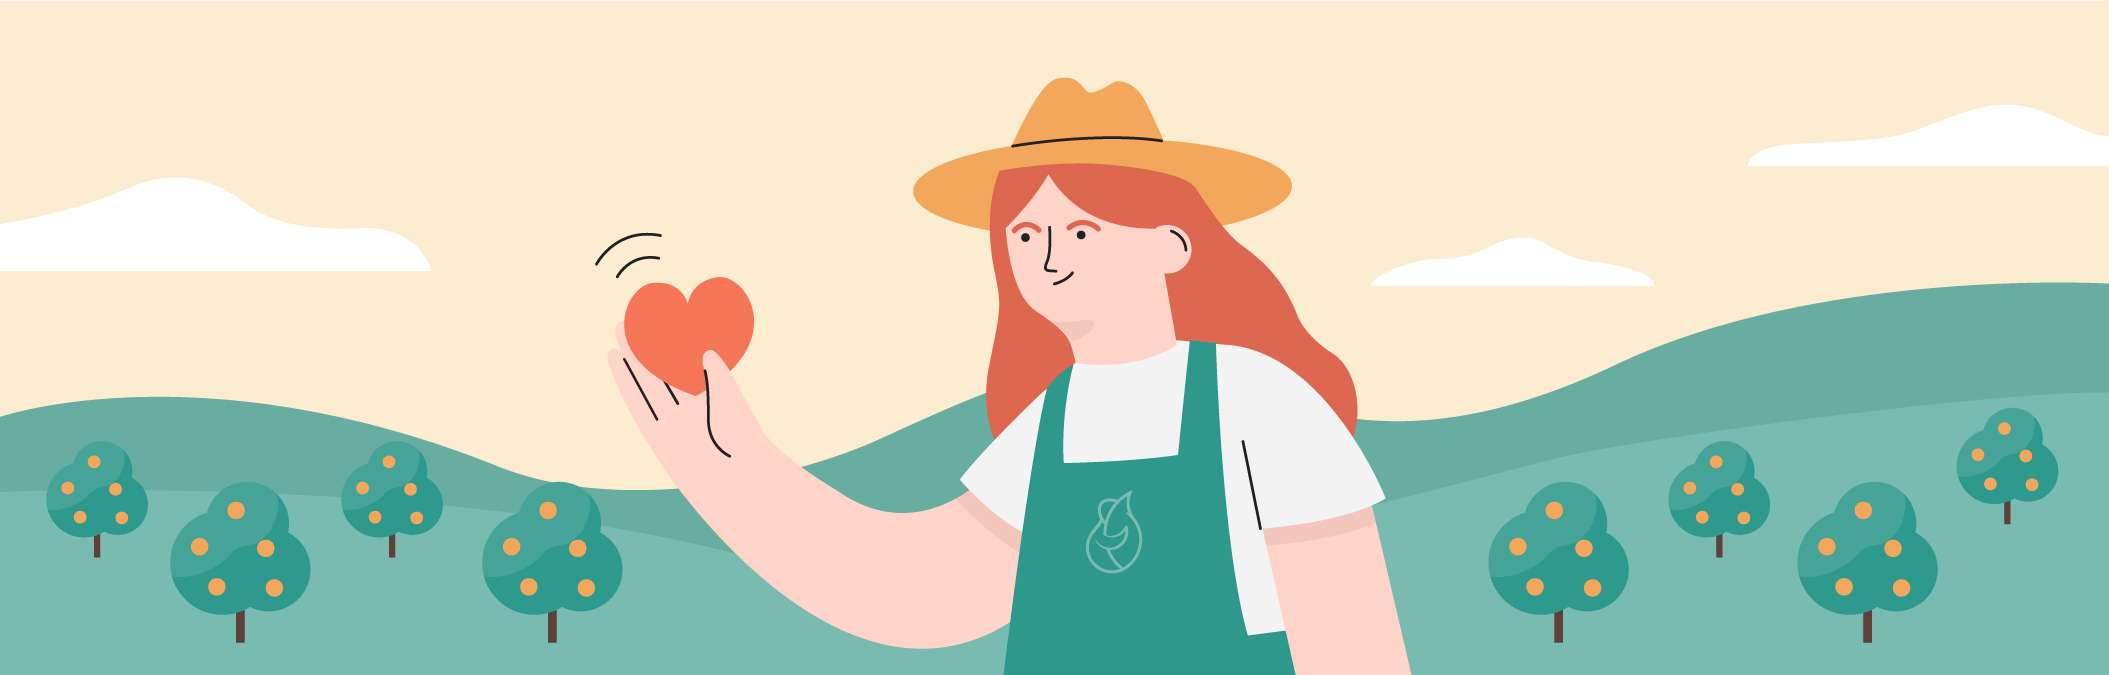 La ilustración de una agricultora con un corazón en la mano